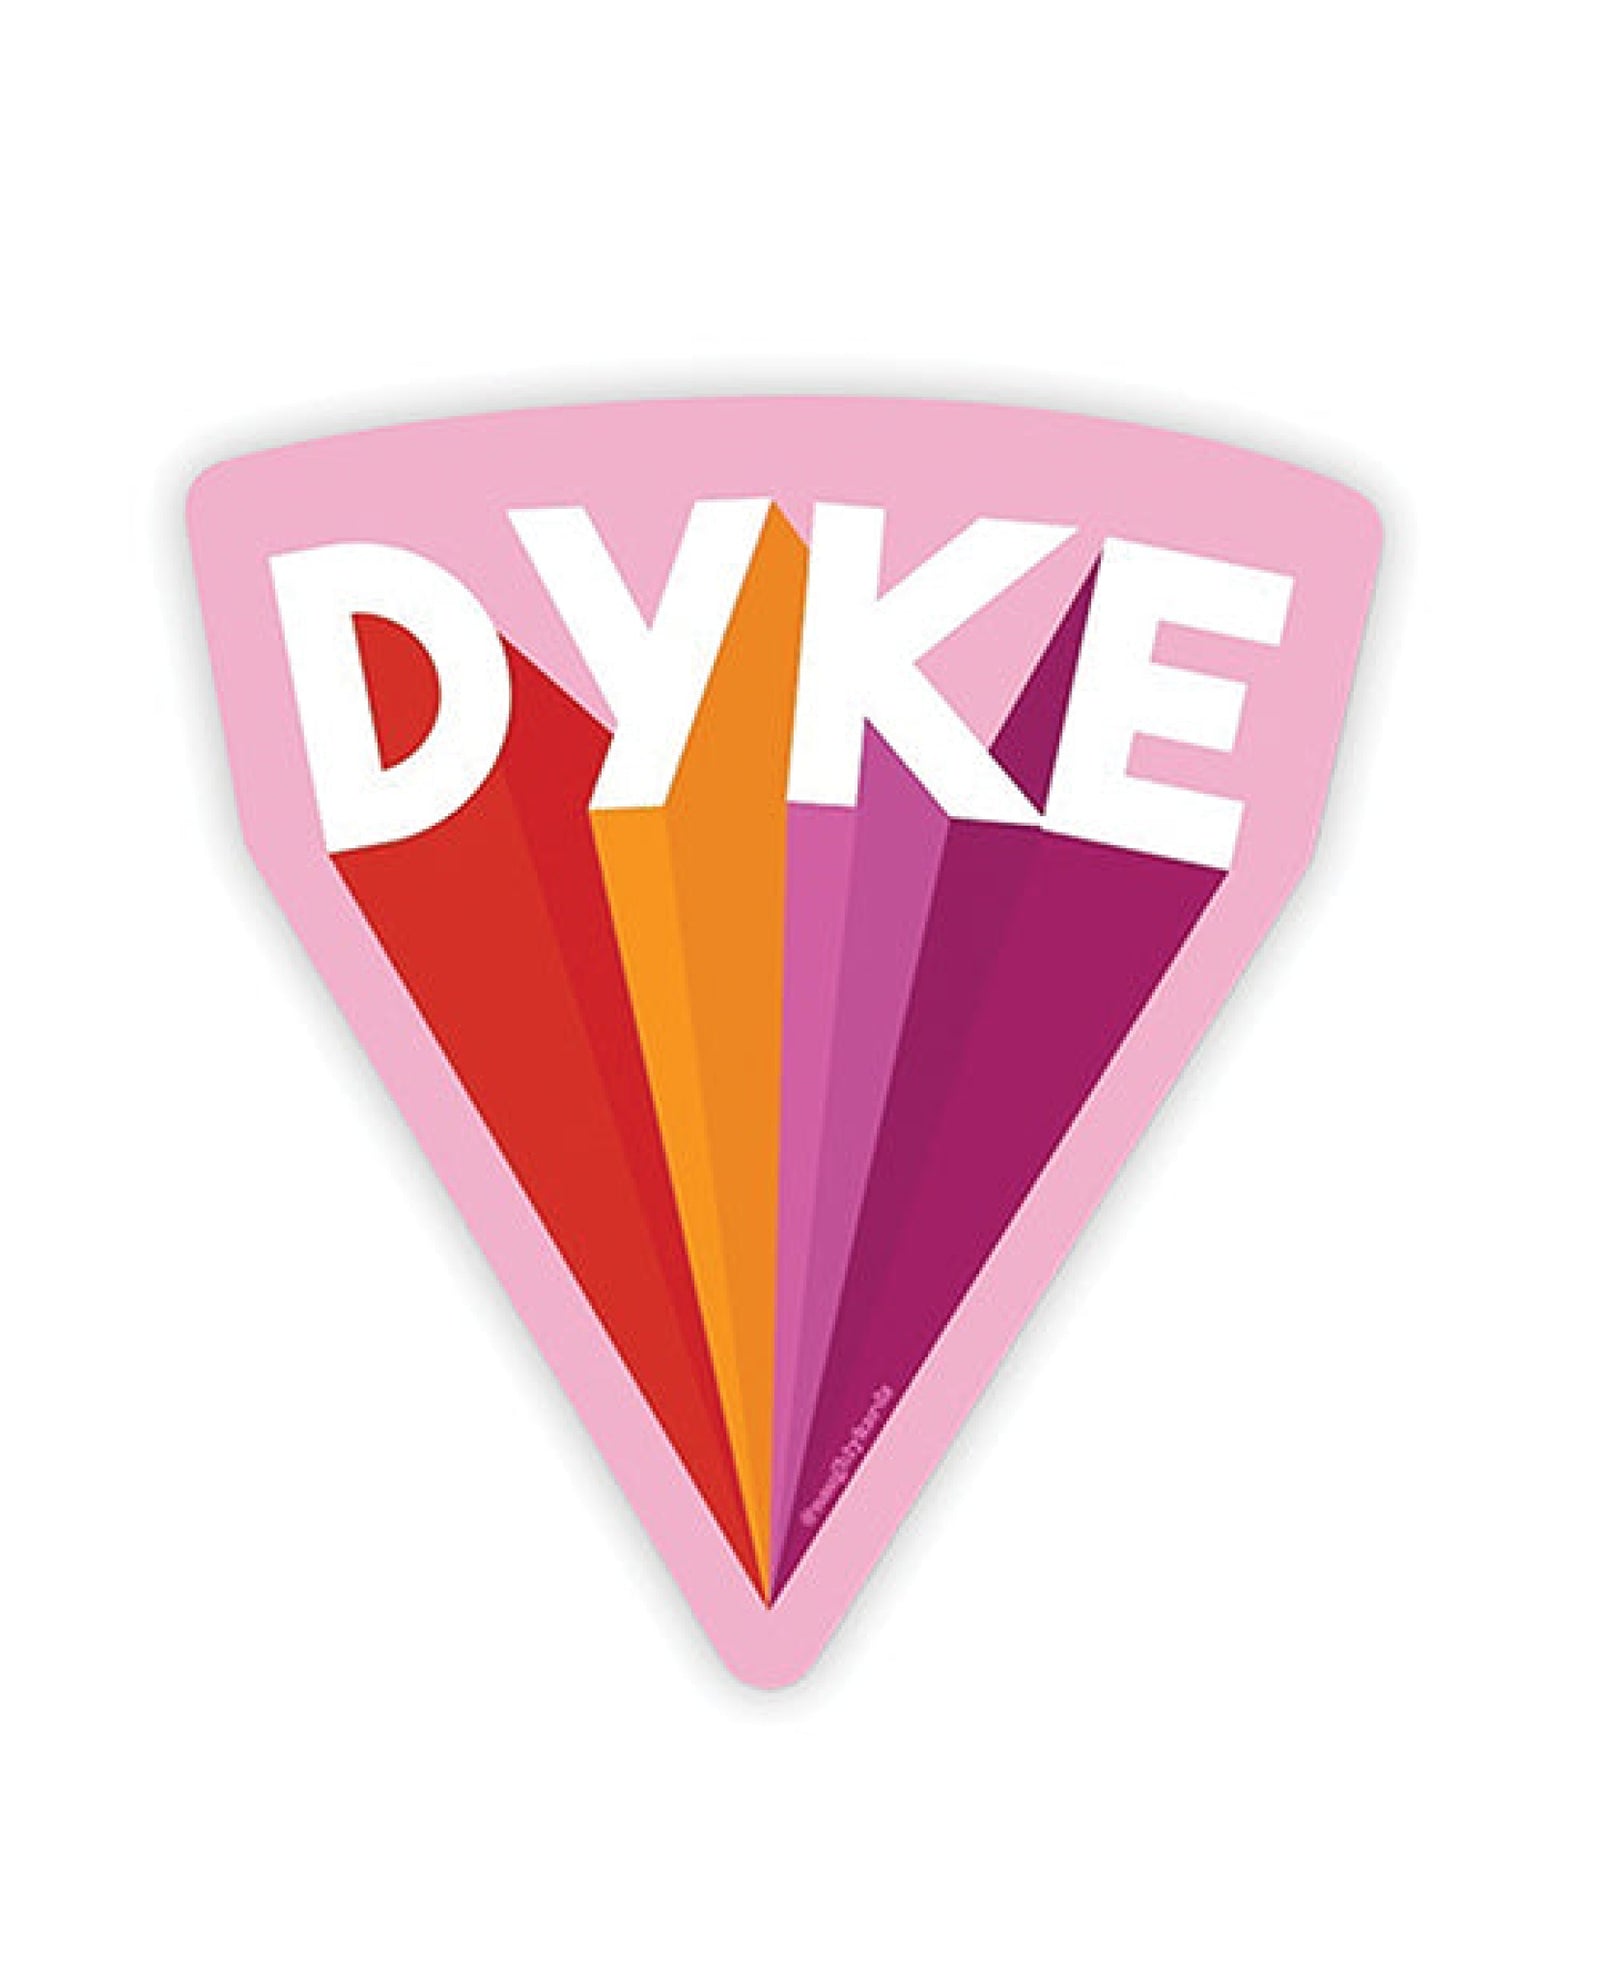 Dyke Naughty Sticker - Pack Of 3 Kush Kards